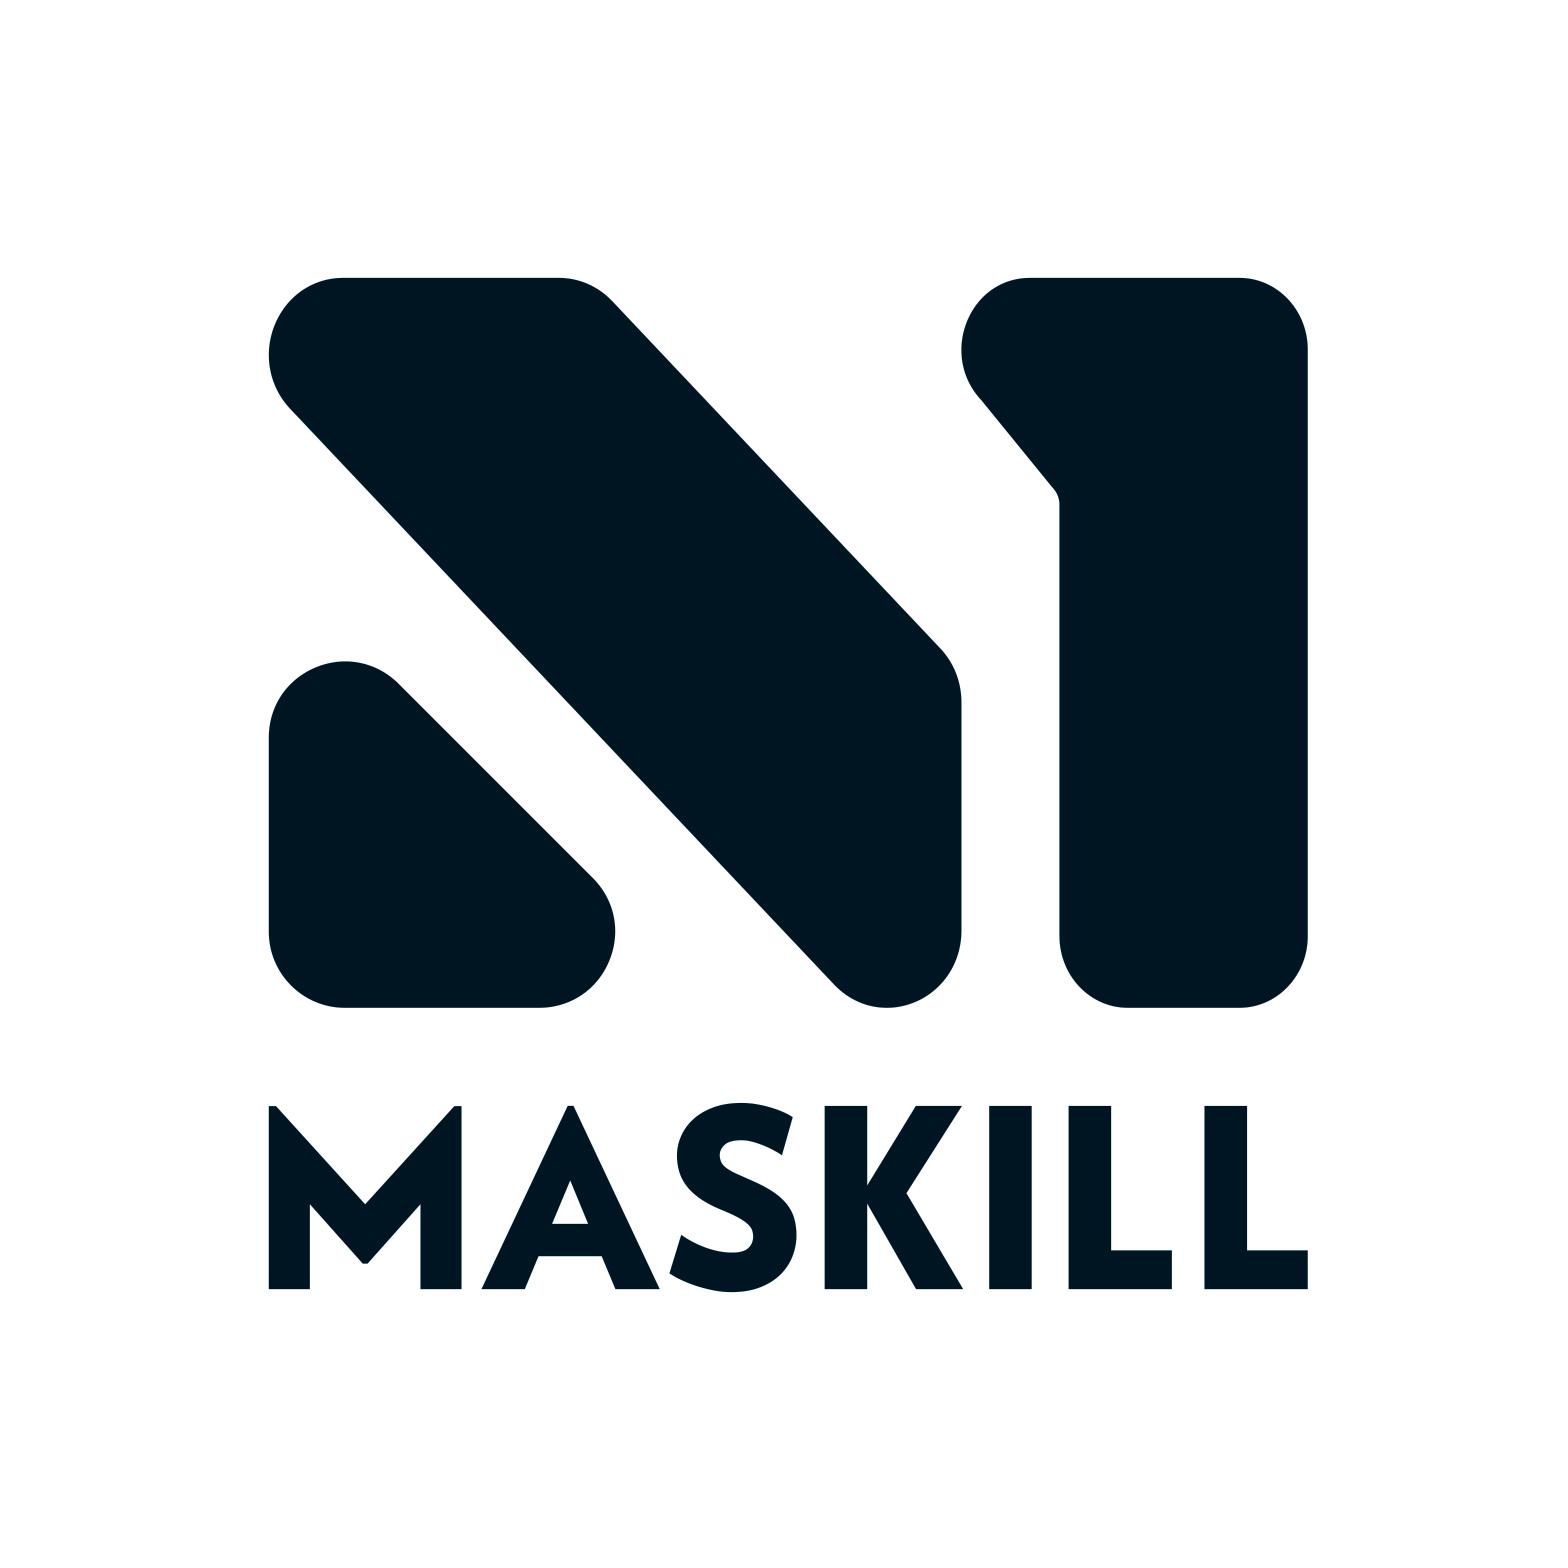 Maskill - Wellcamp, QLD 4350 - (07) 4634 0259 | ShowMeLocal.com